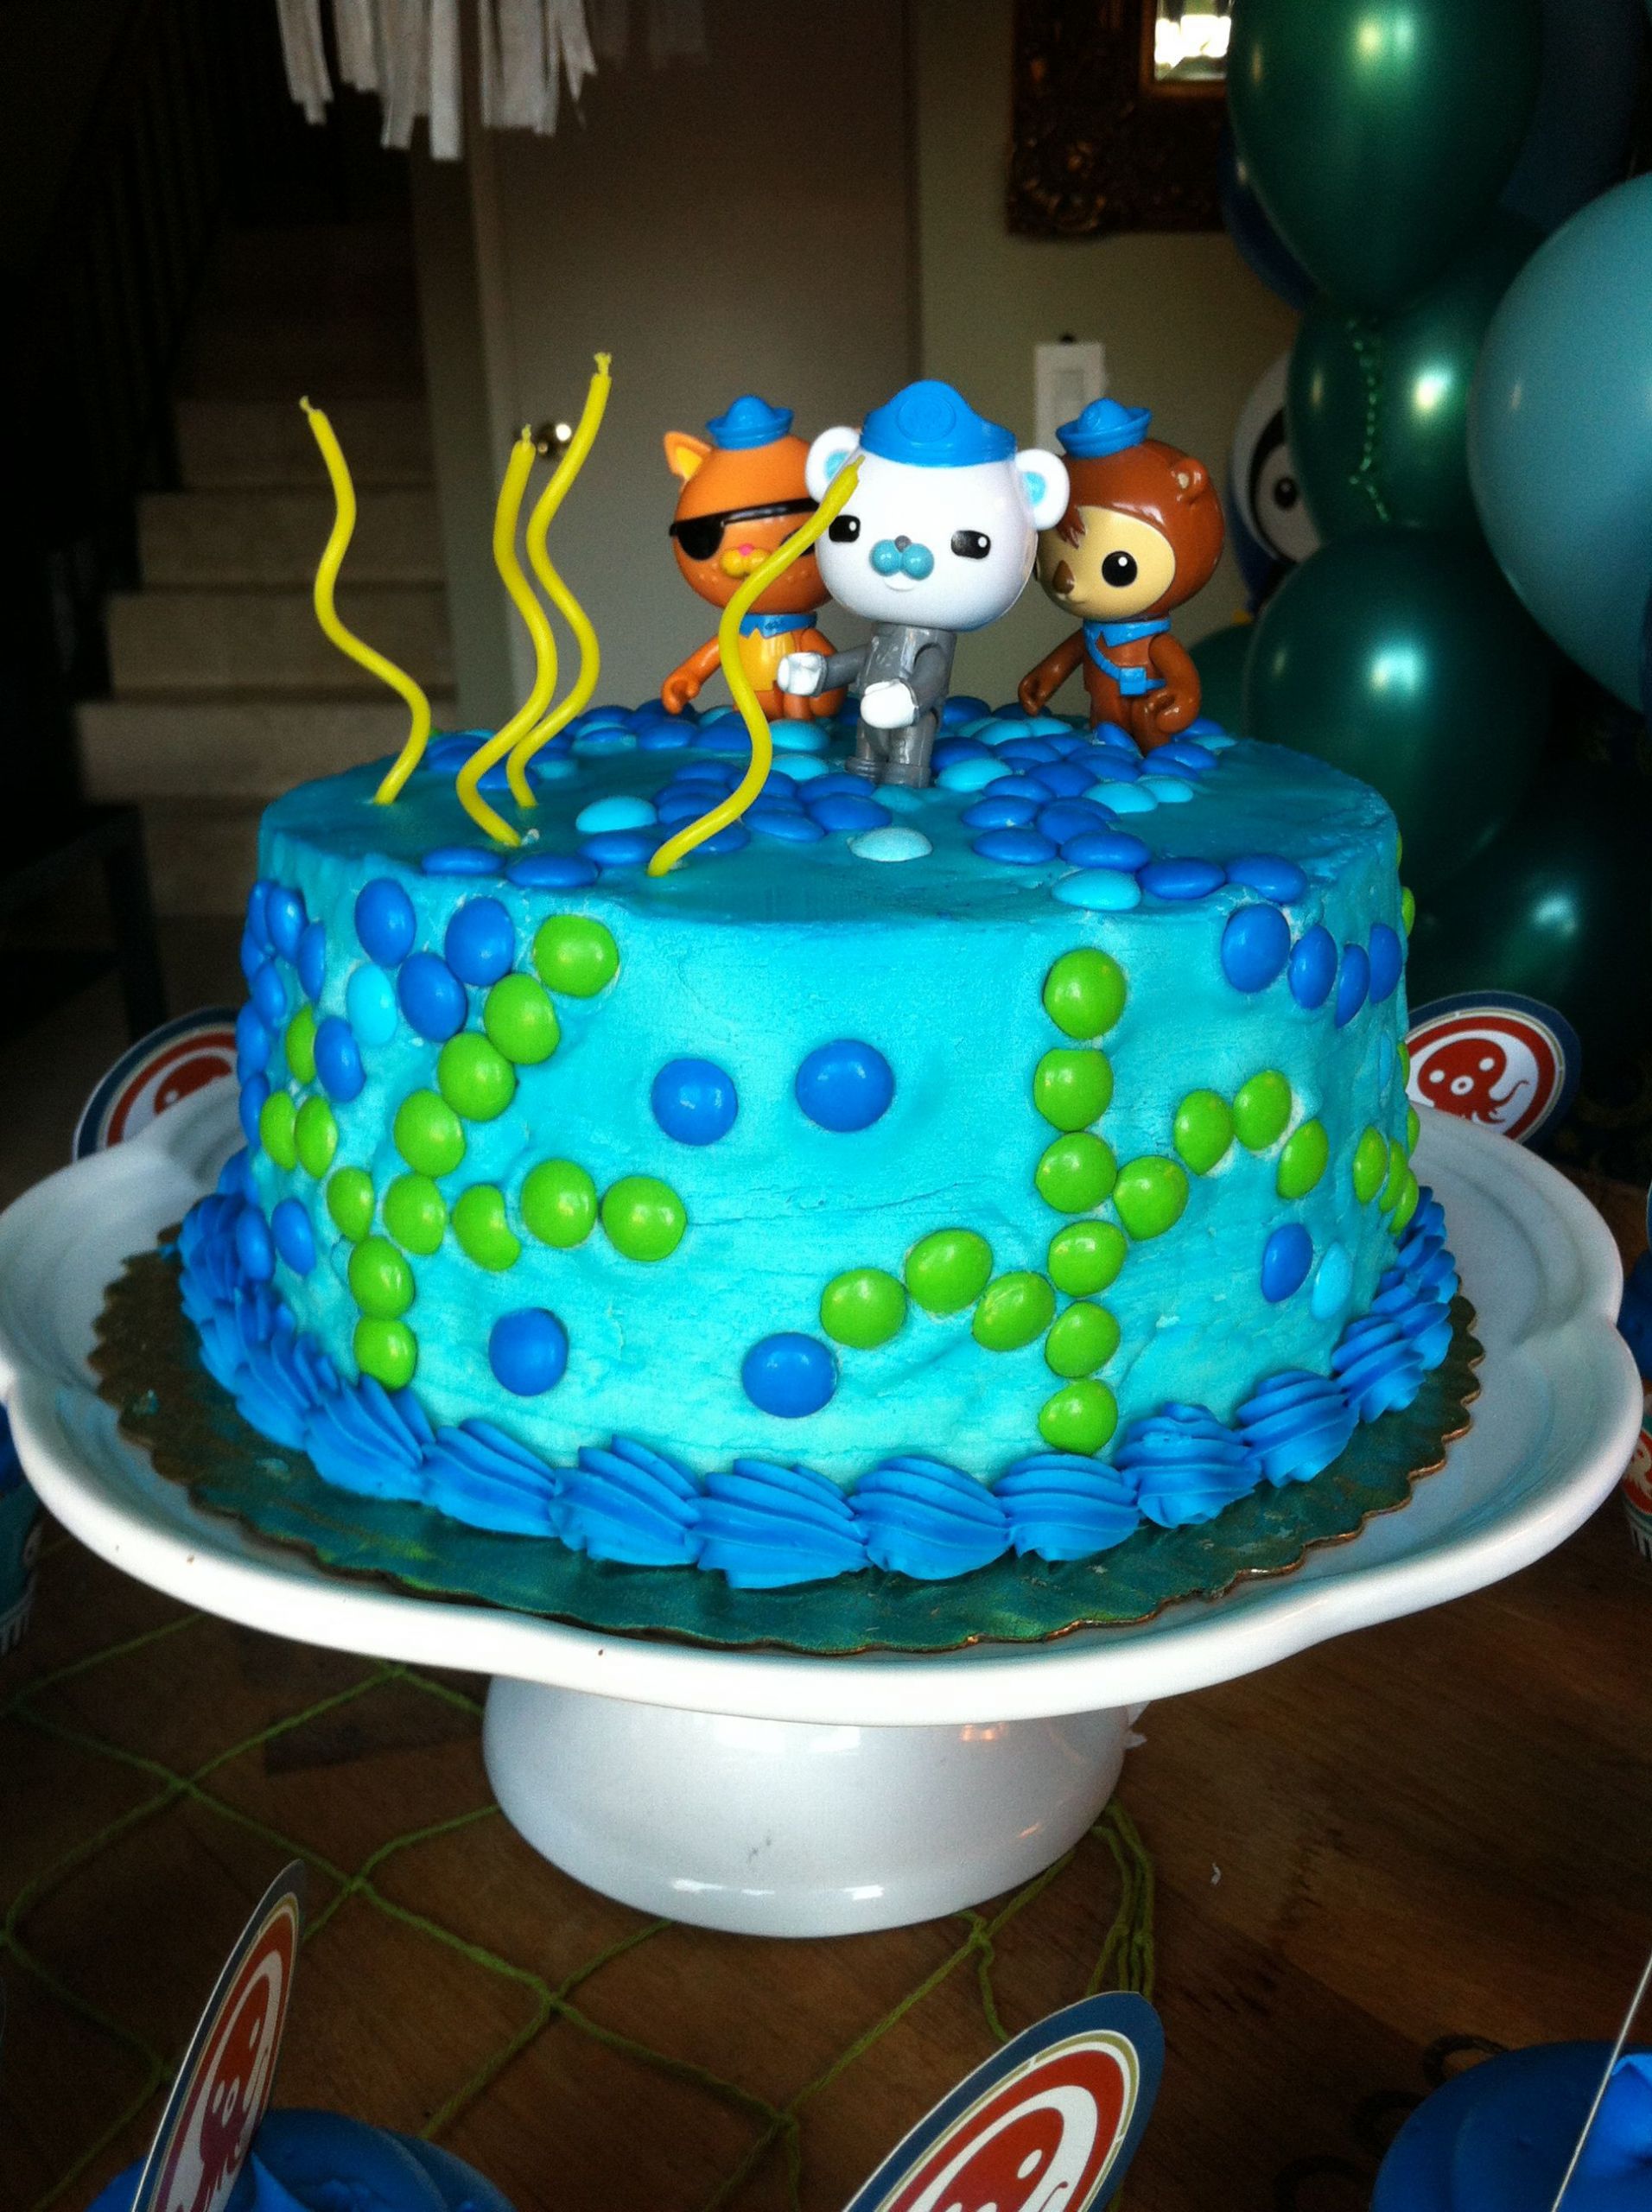 Octonauts Birthday Cake
 Best 25 Octonaut cake ideas on Pinterest